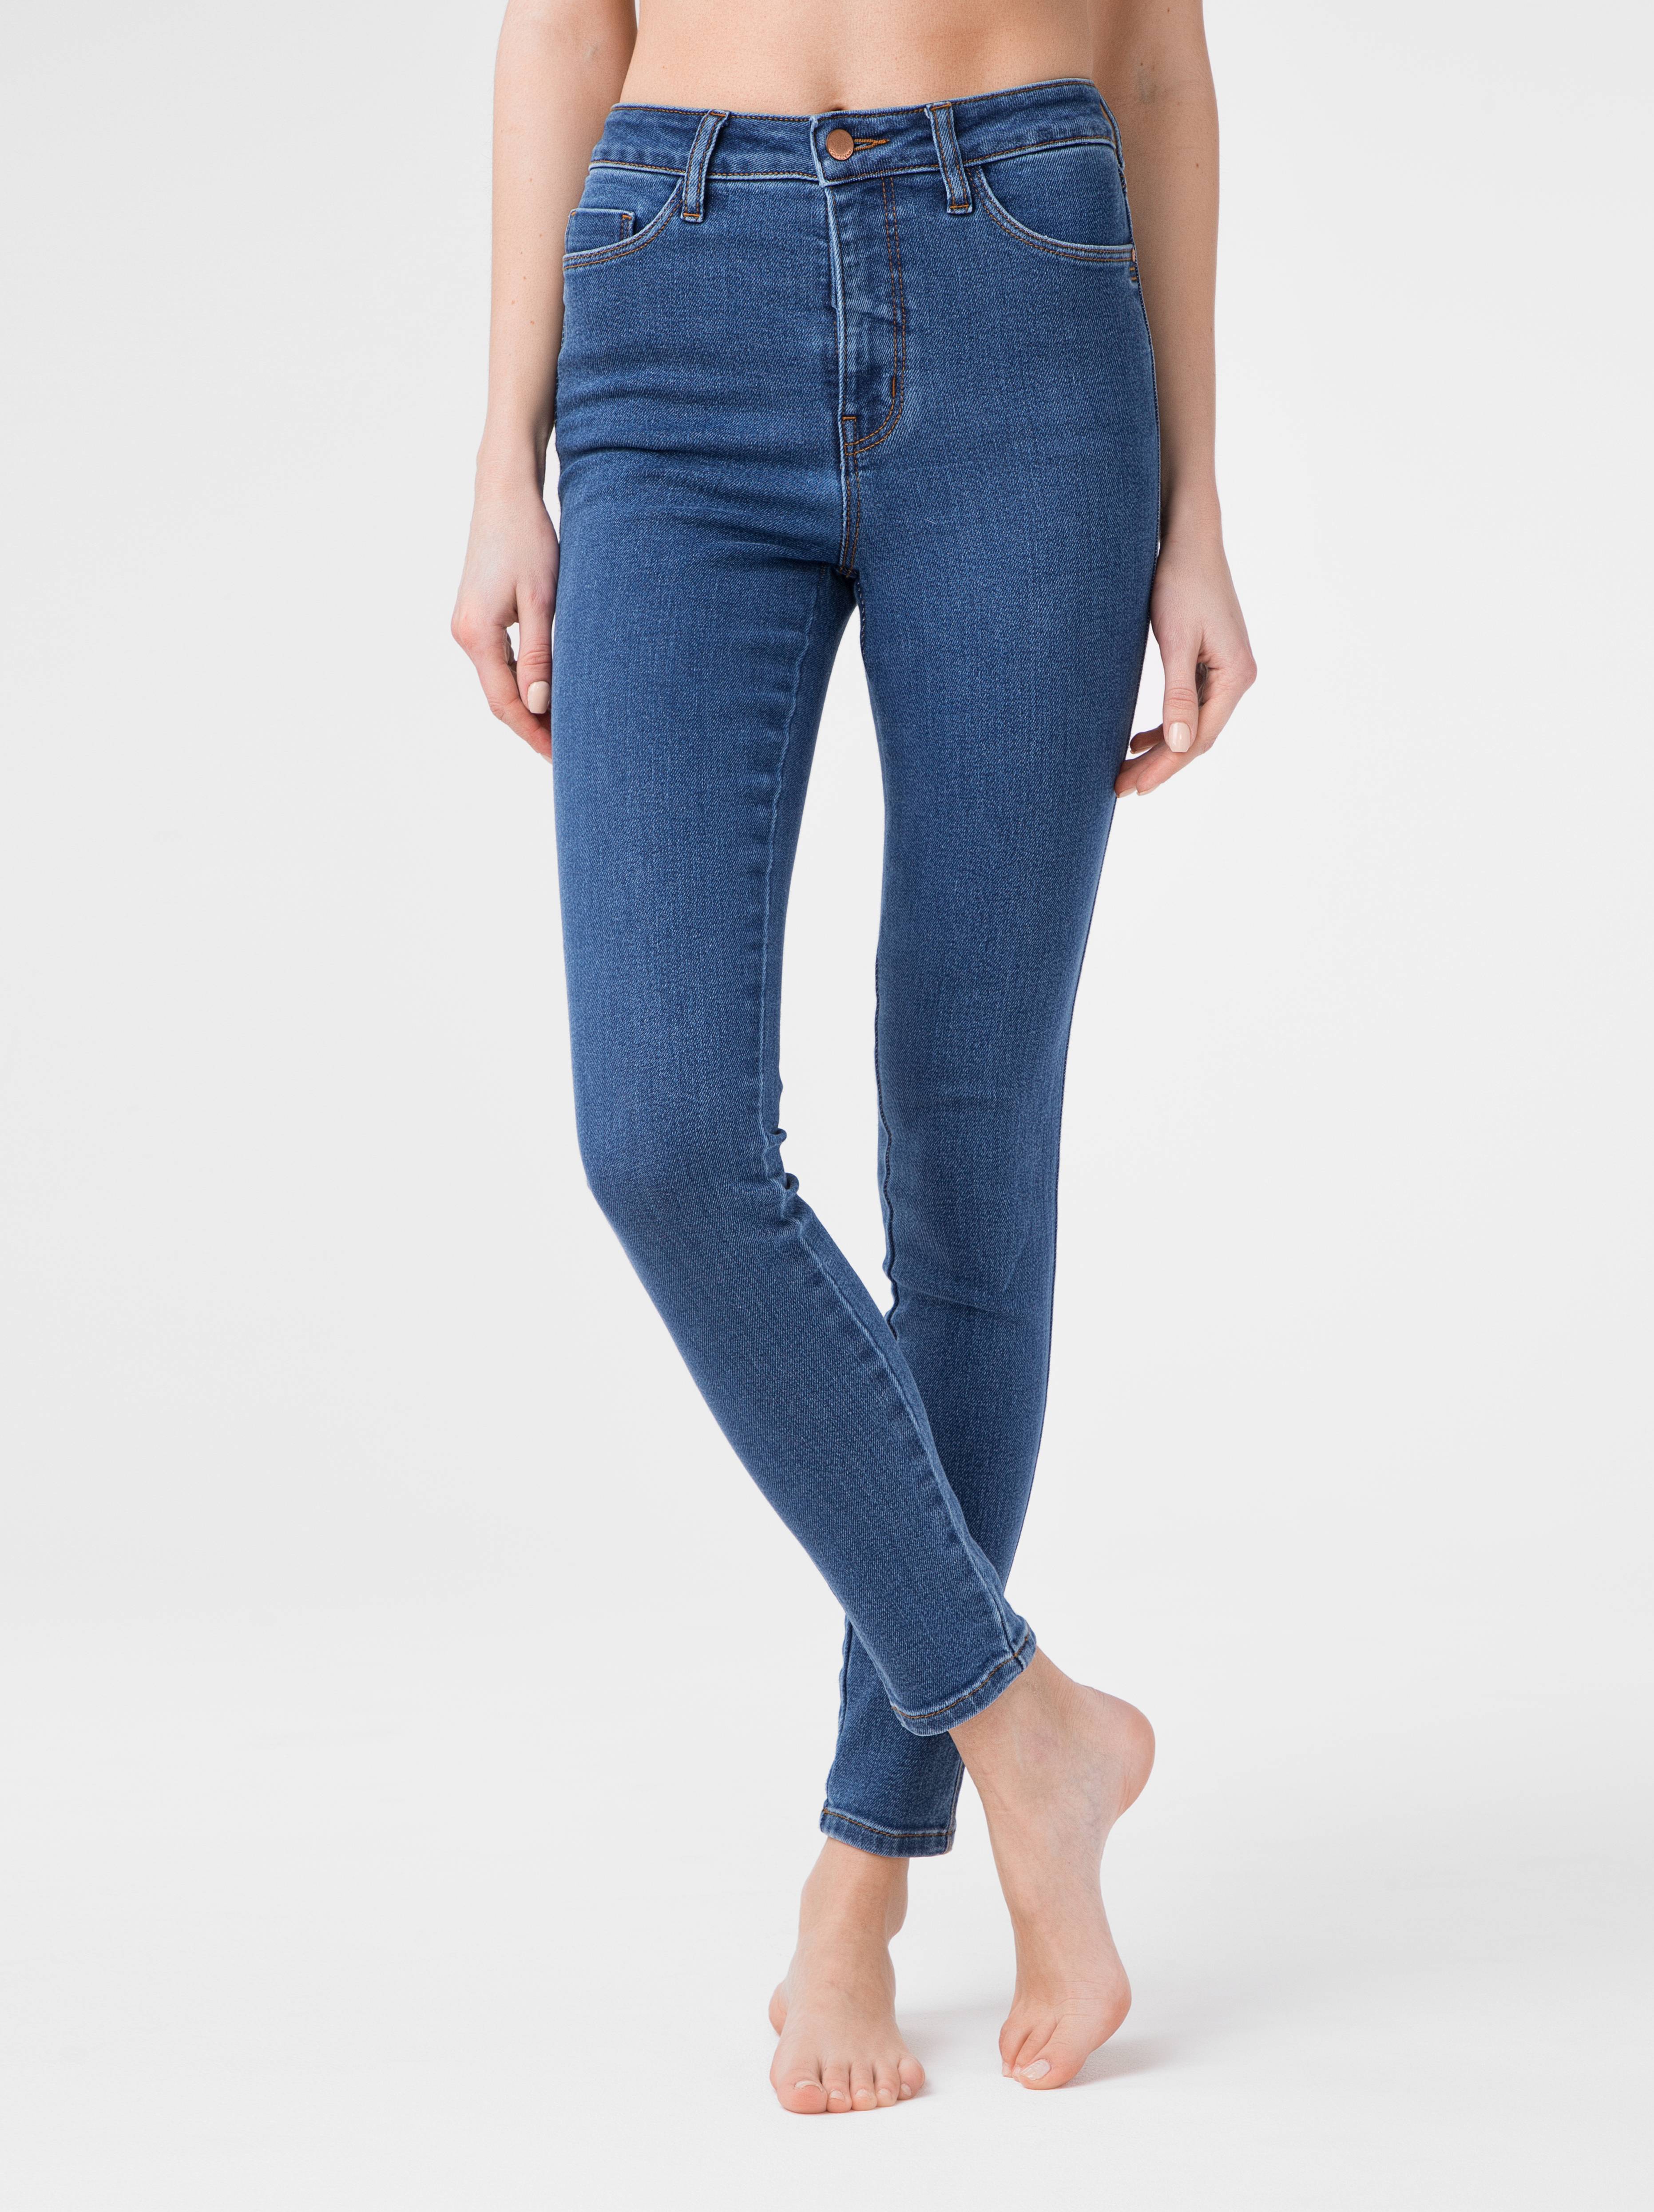 Моделирующие eco-friendly джинсы skinny c супервысокой посадкой CON-174 Lycra® Conte ⭐️, цвет authentic blue, размер 164-102 - фото 1